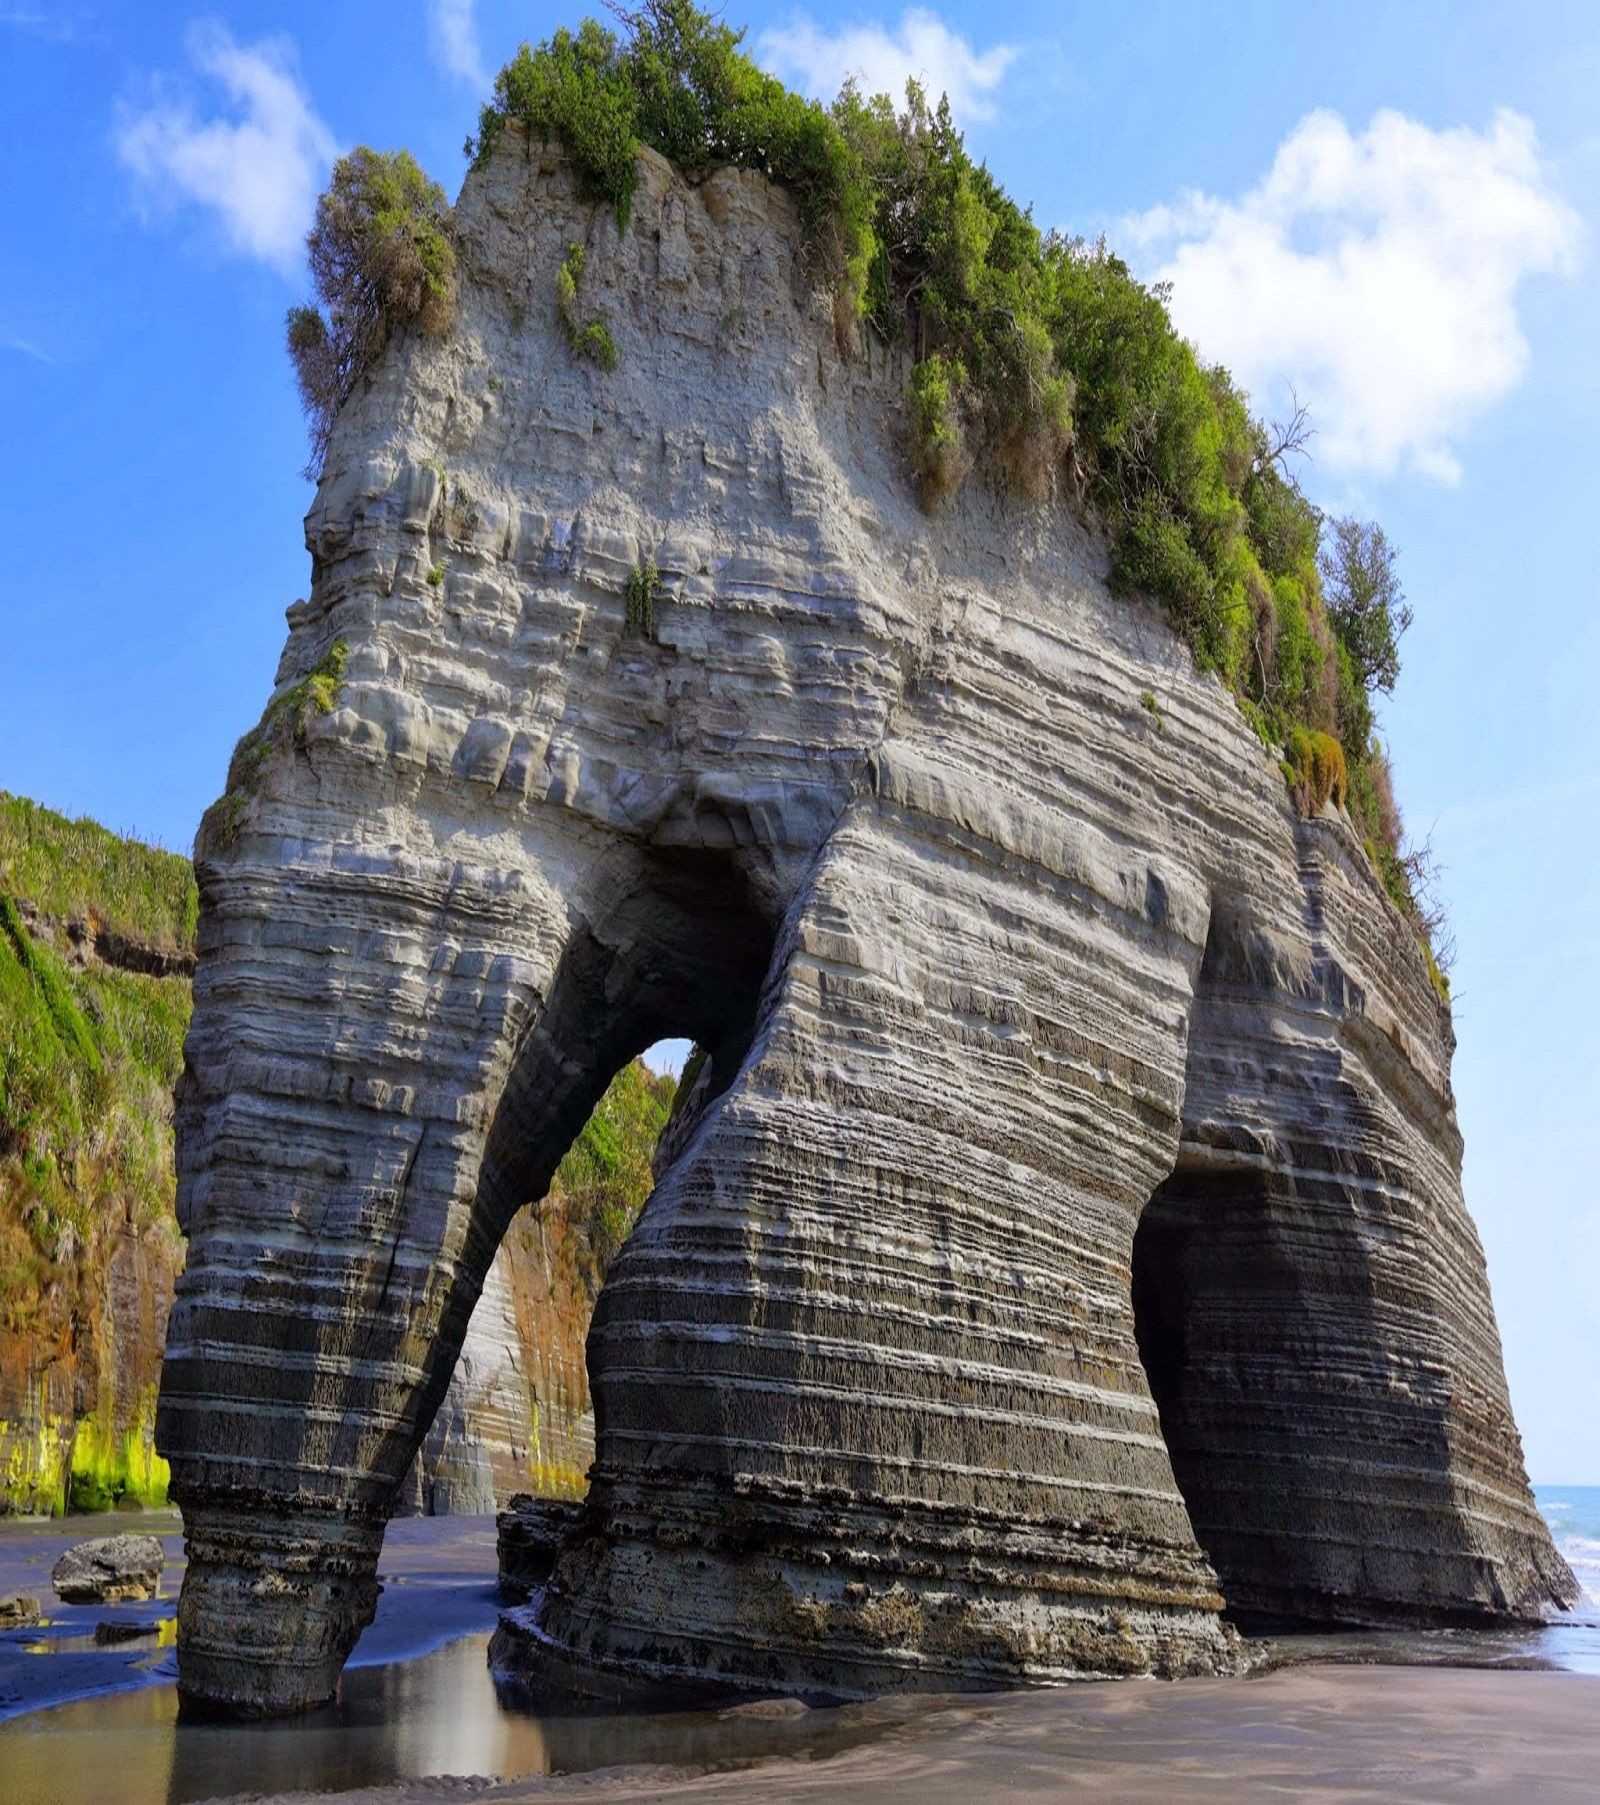 Слоновая скала, пляж Тонгапоруту, Новая Зеландия